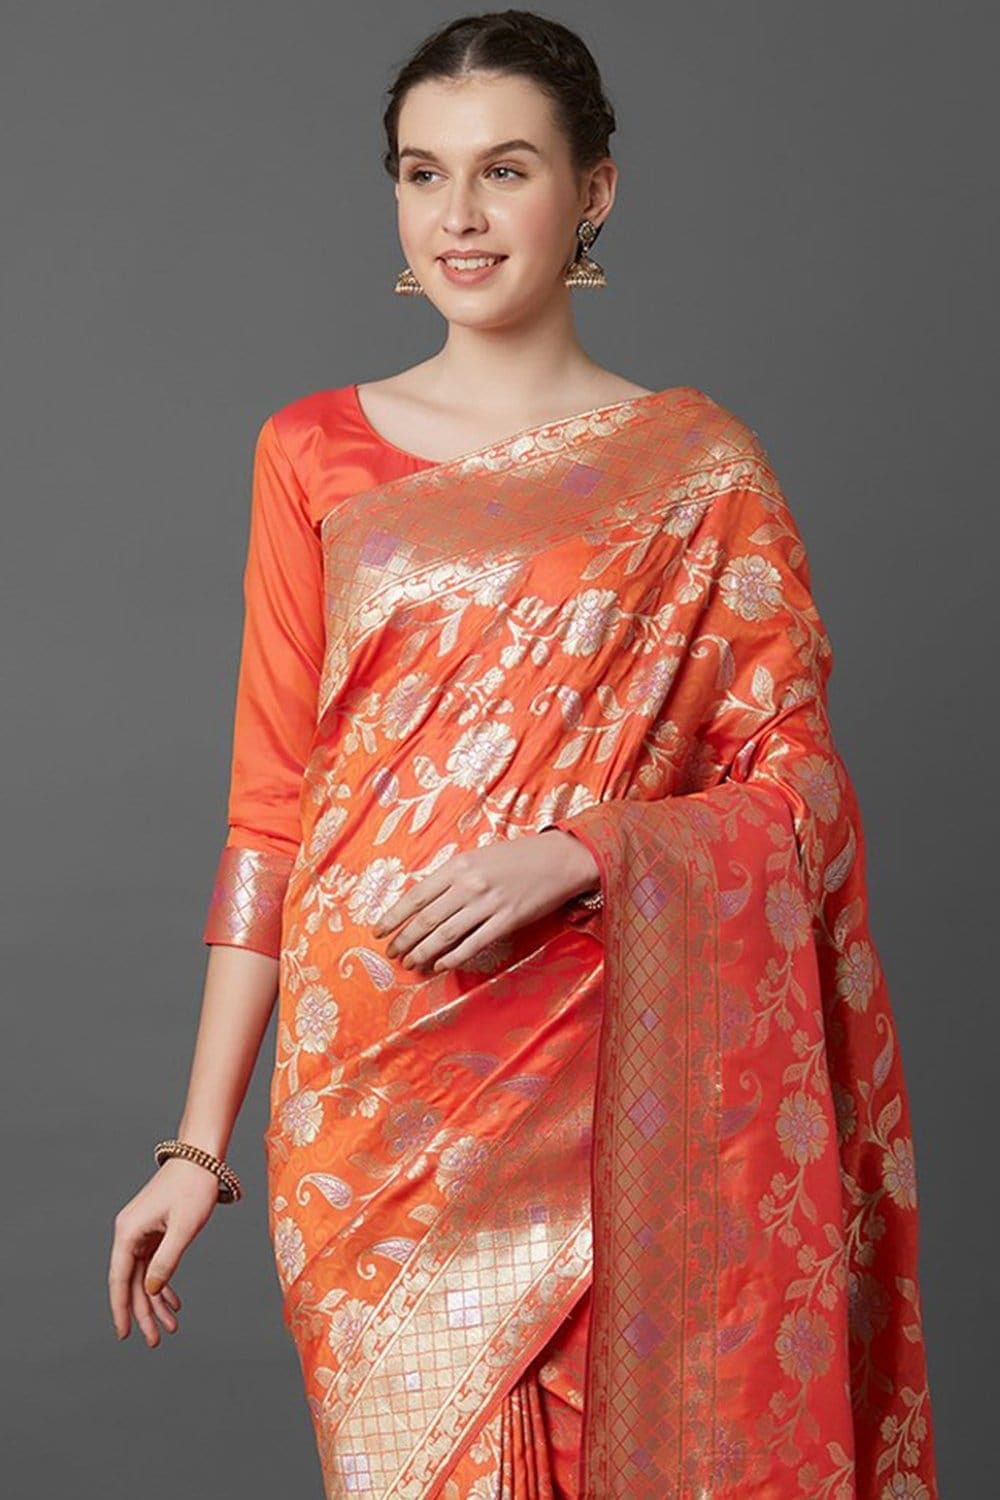 Pastel Orange Jail Woven Bridal Banarasi Saree - Limited Exclusive Bridal Collection